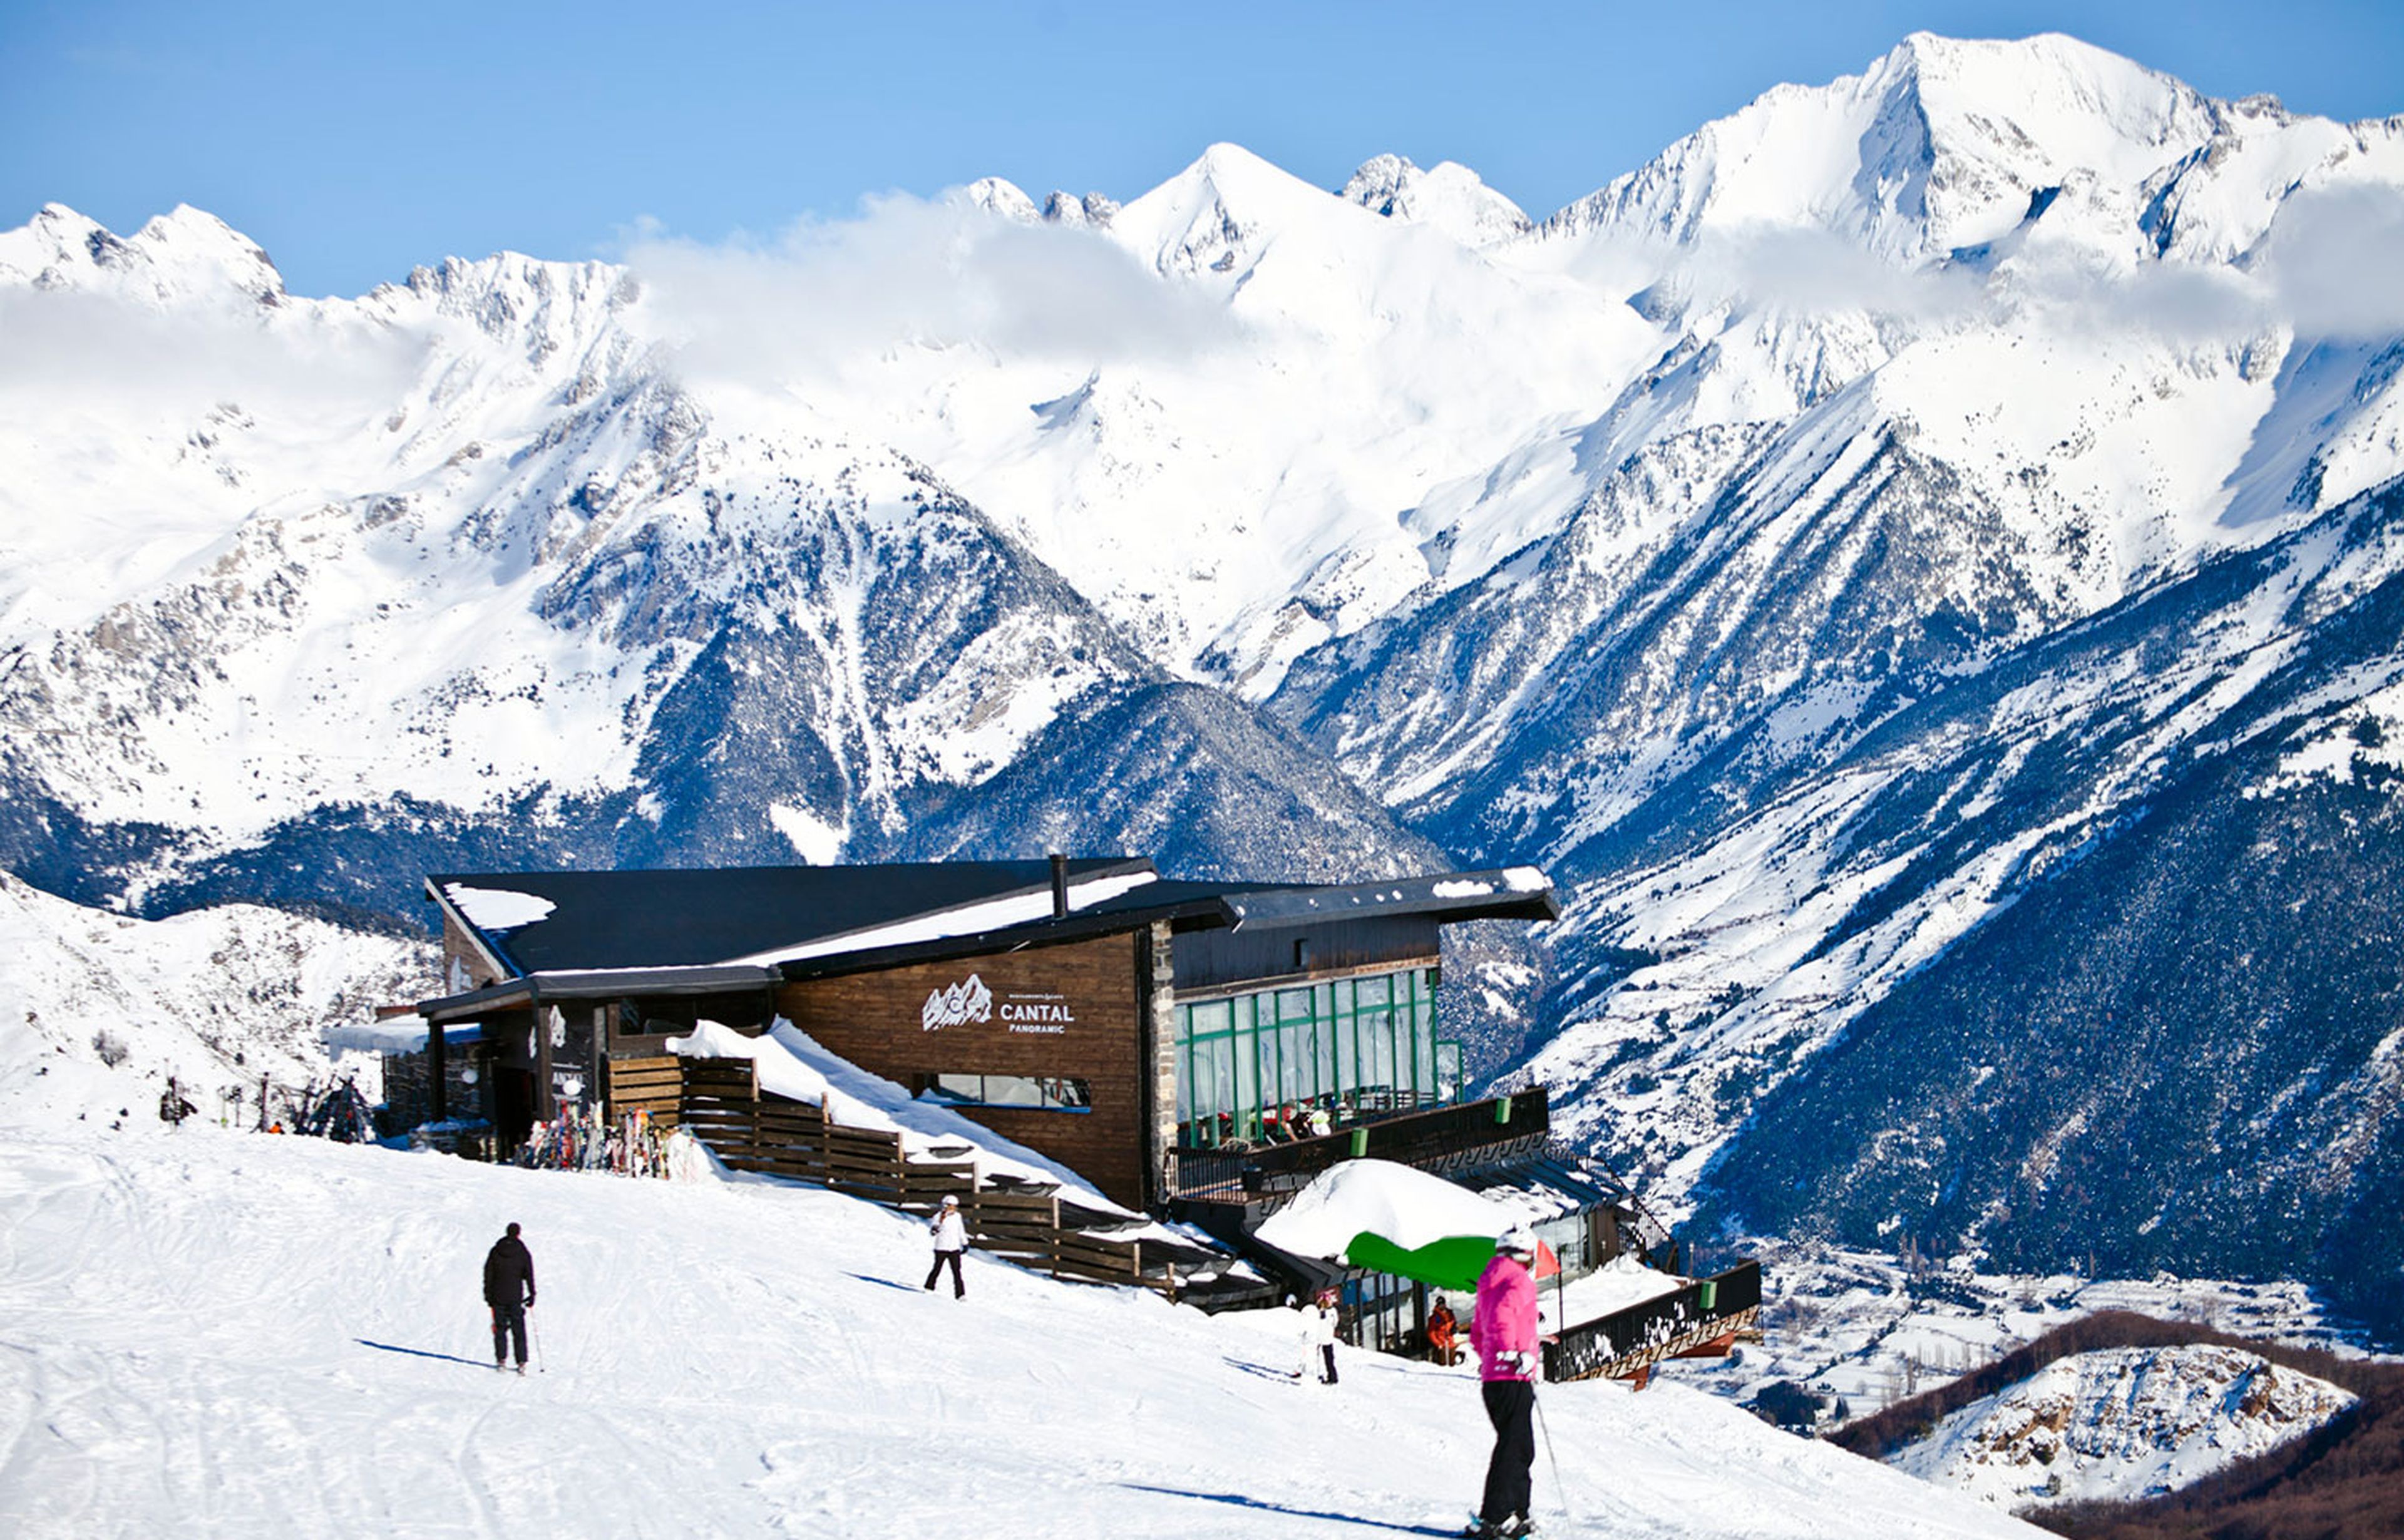 Las cinco principales estaciones de esquí en España